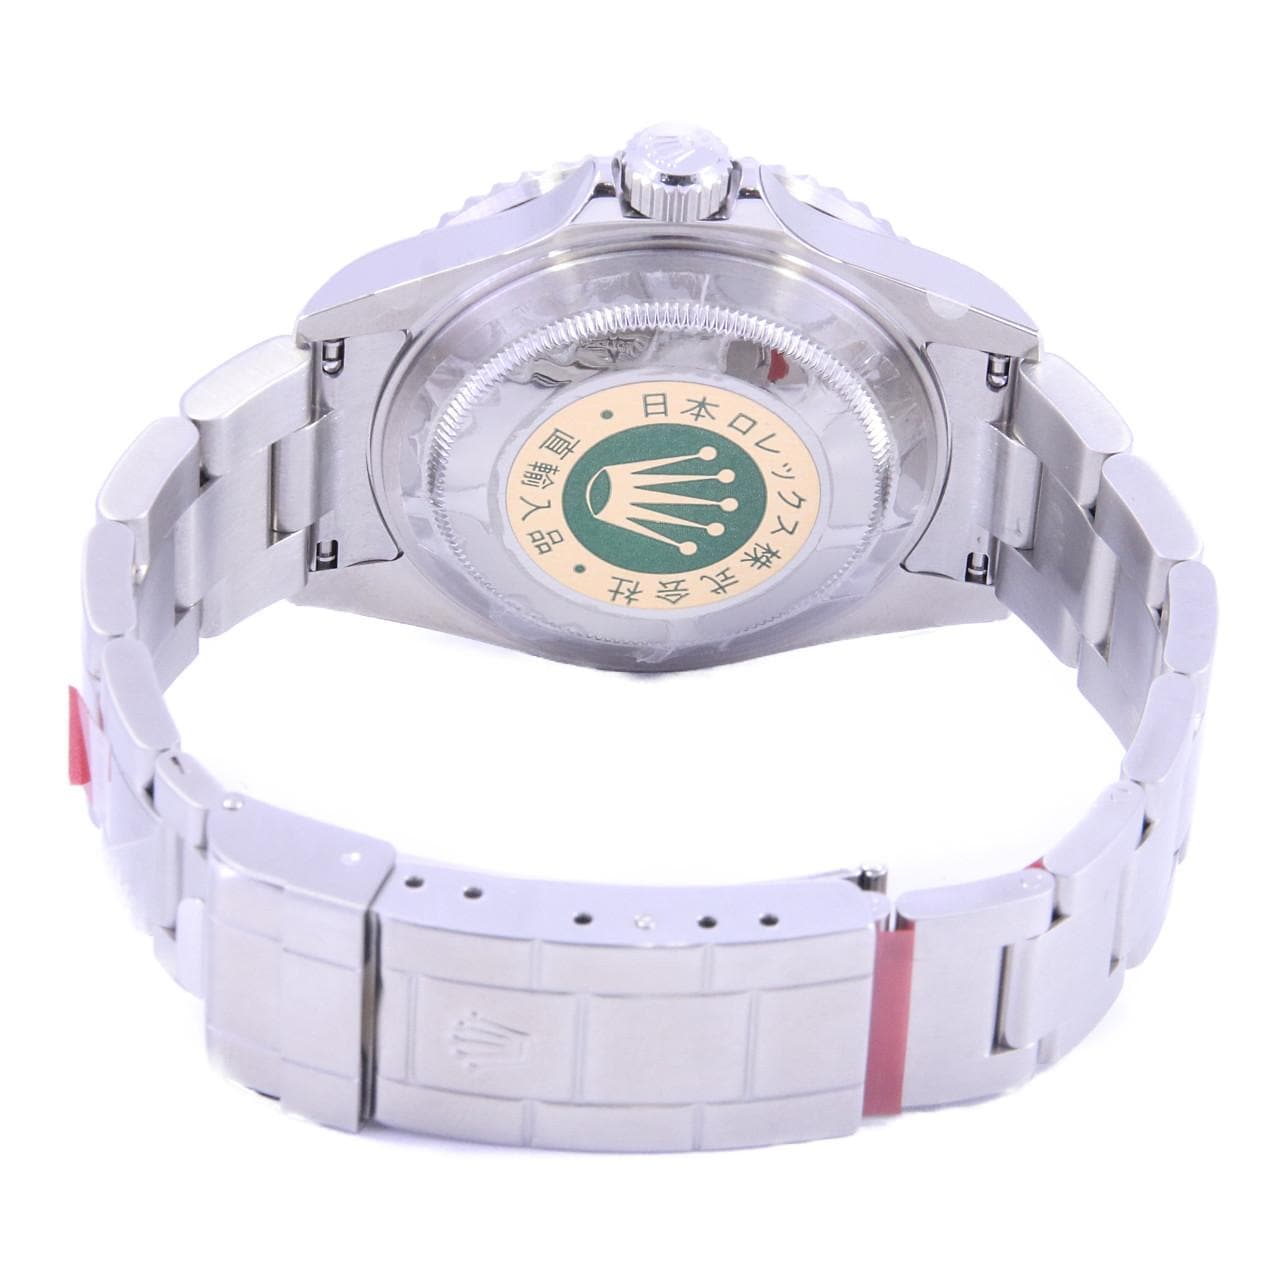 ロレックス ROLEX サブマリーナデイト M番 16610 SS 自動巻き メンズ 腕時計